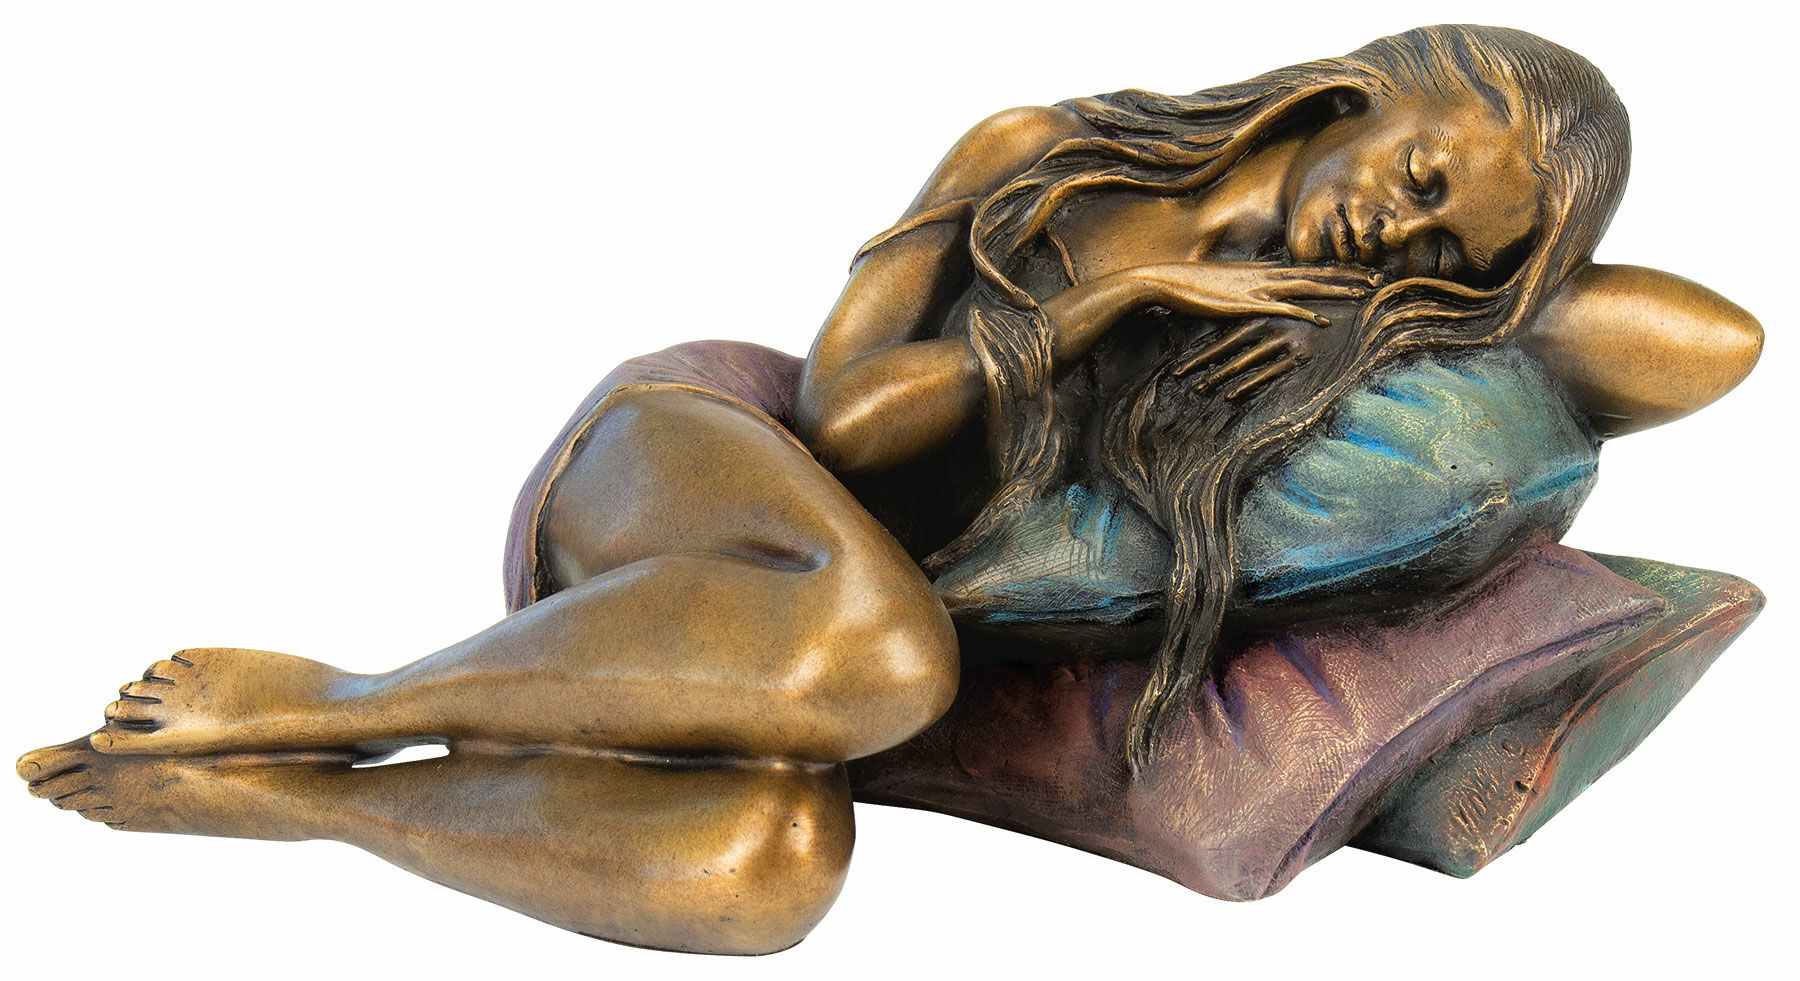 Skulptur "Hvilende pige", bronze von Manel Vidal